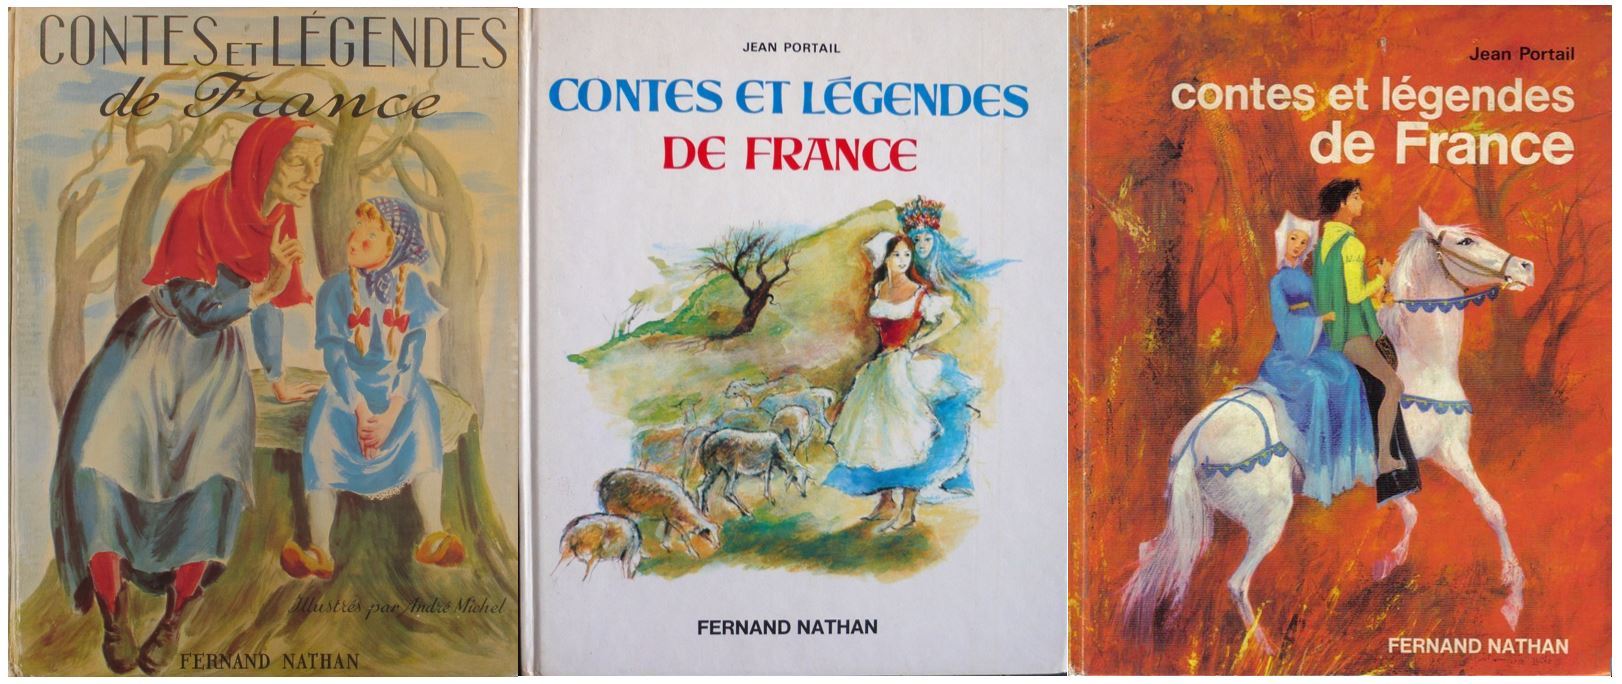 contes - Nathan : la collection Contes et légendes - Page 2 Eabd2622fd1ed24d45ec745c2f7e670827f20e06